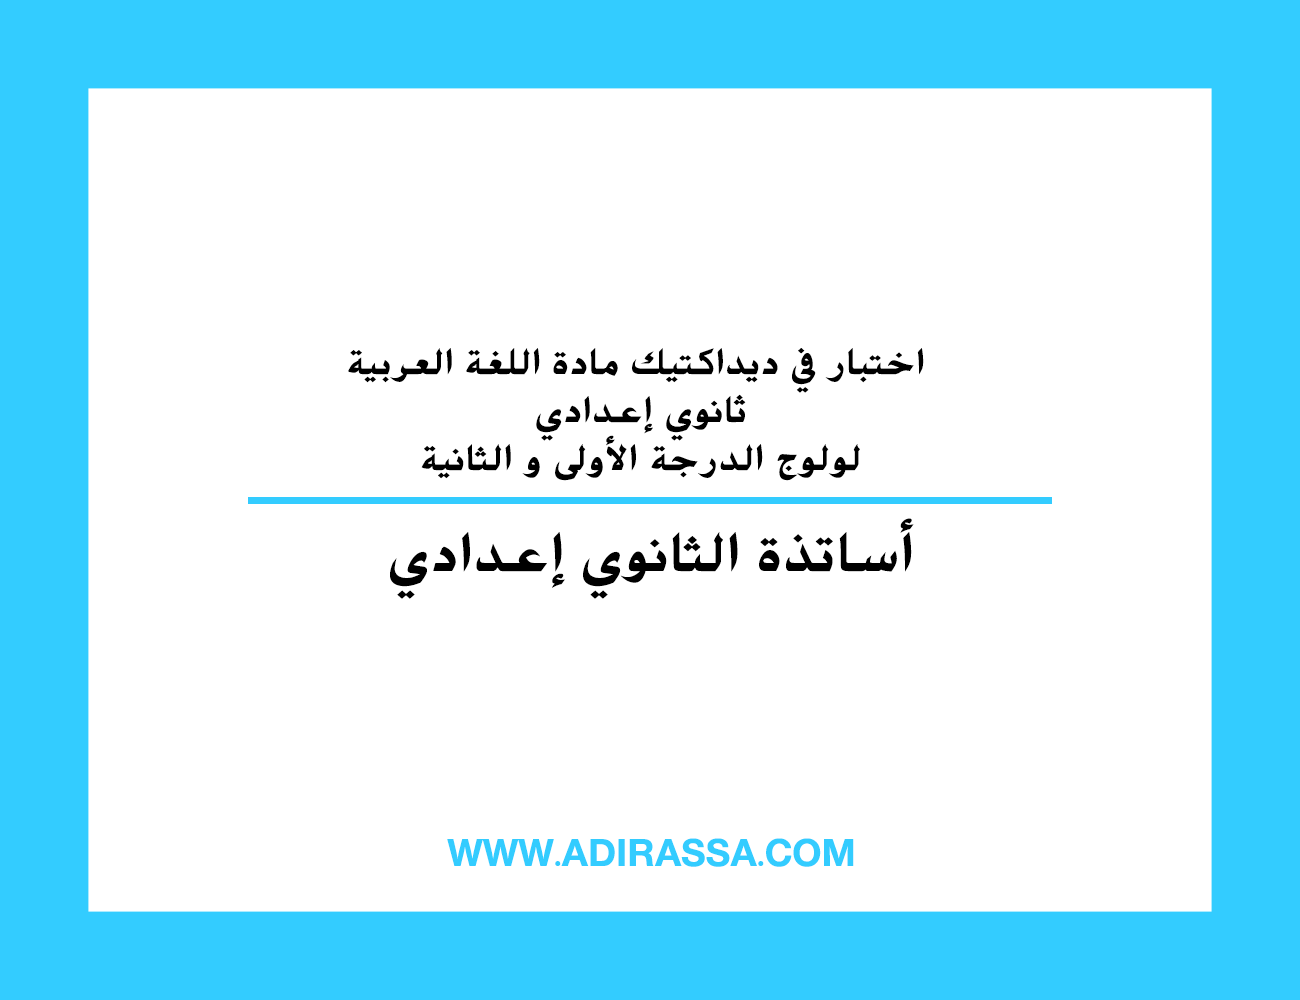 اختبار في ديداكتيك مادة اللغة العربية ثانوي إعدادي لولوج الدرجة الأولى و الثانية